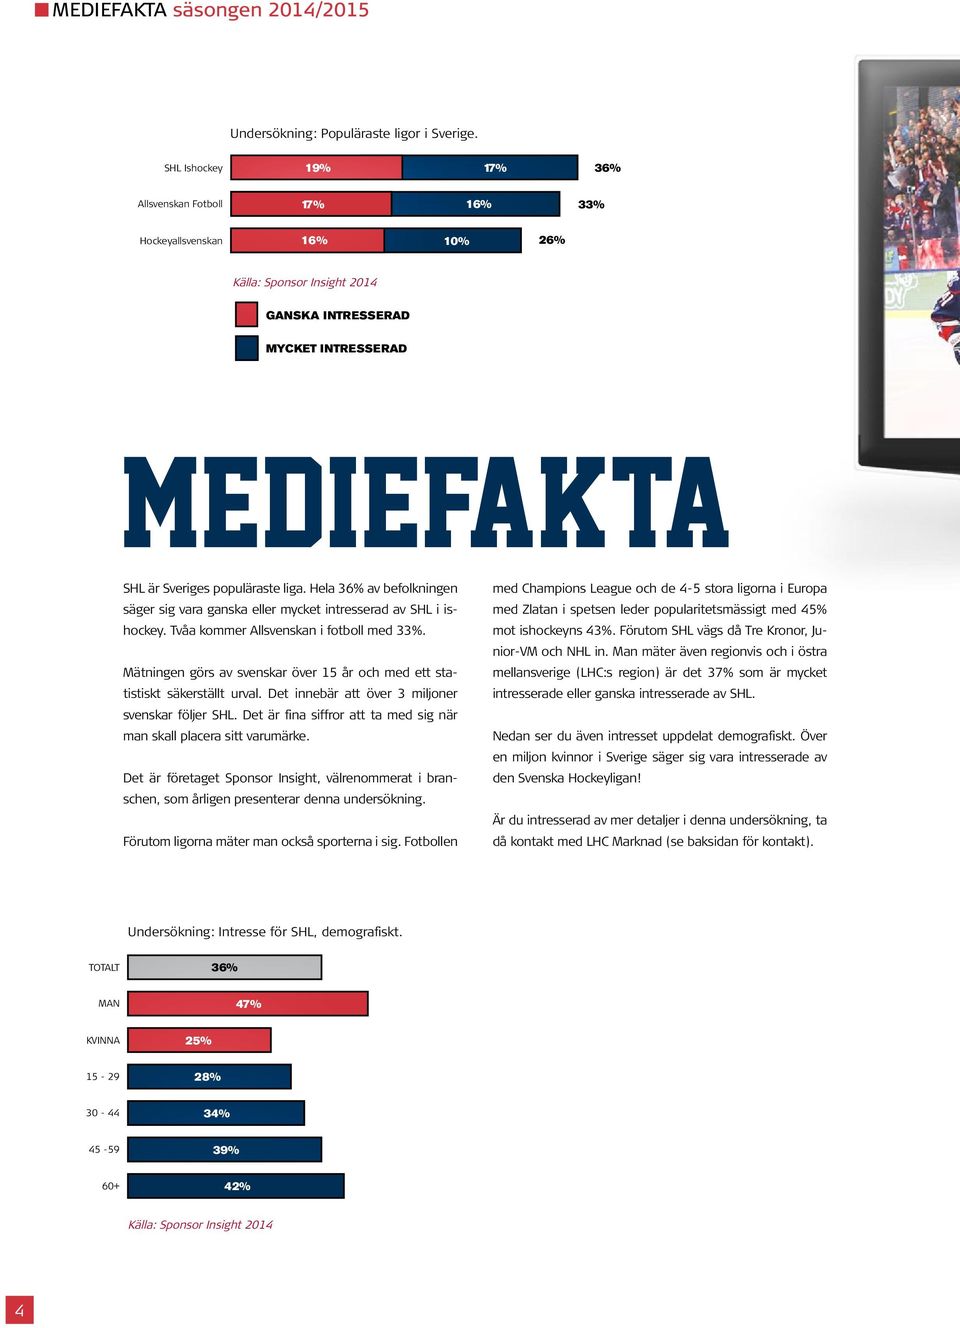 Hela 36% av befolkningen säger sig vara ganska eller mycket intresserad av SHL i ishockey. Tvåa kommer Allsvenskan i fotboll med 33%.